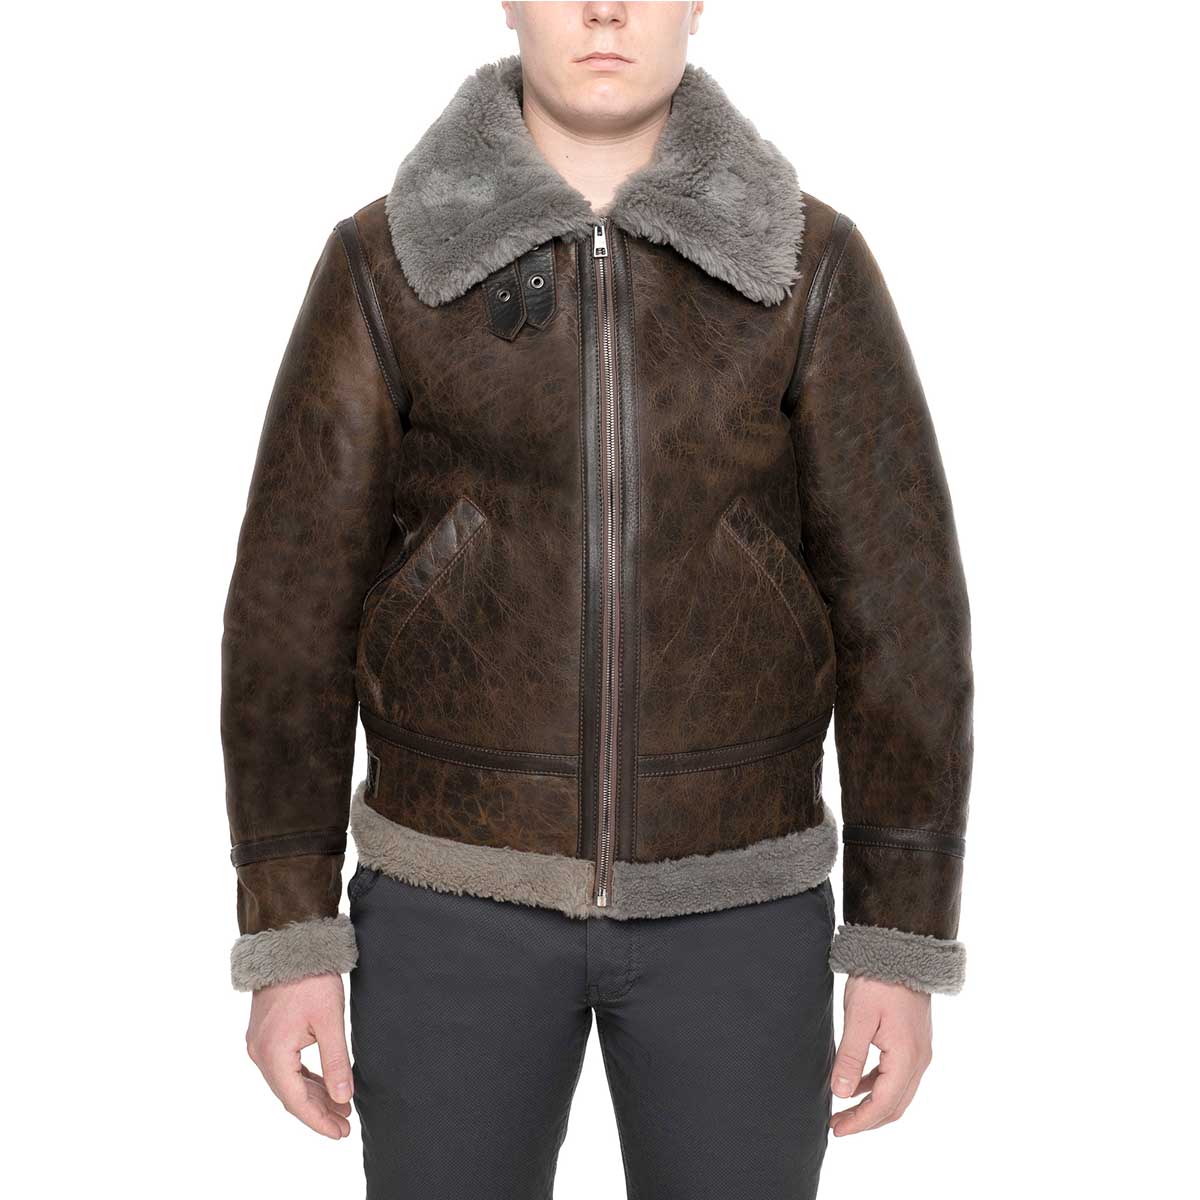 Men's dark brown sheepskin jacket